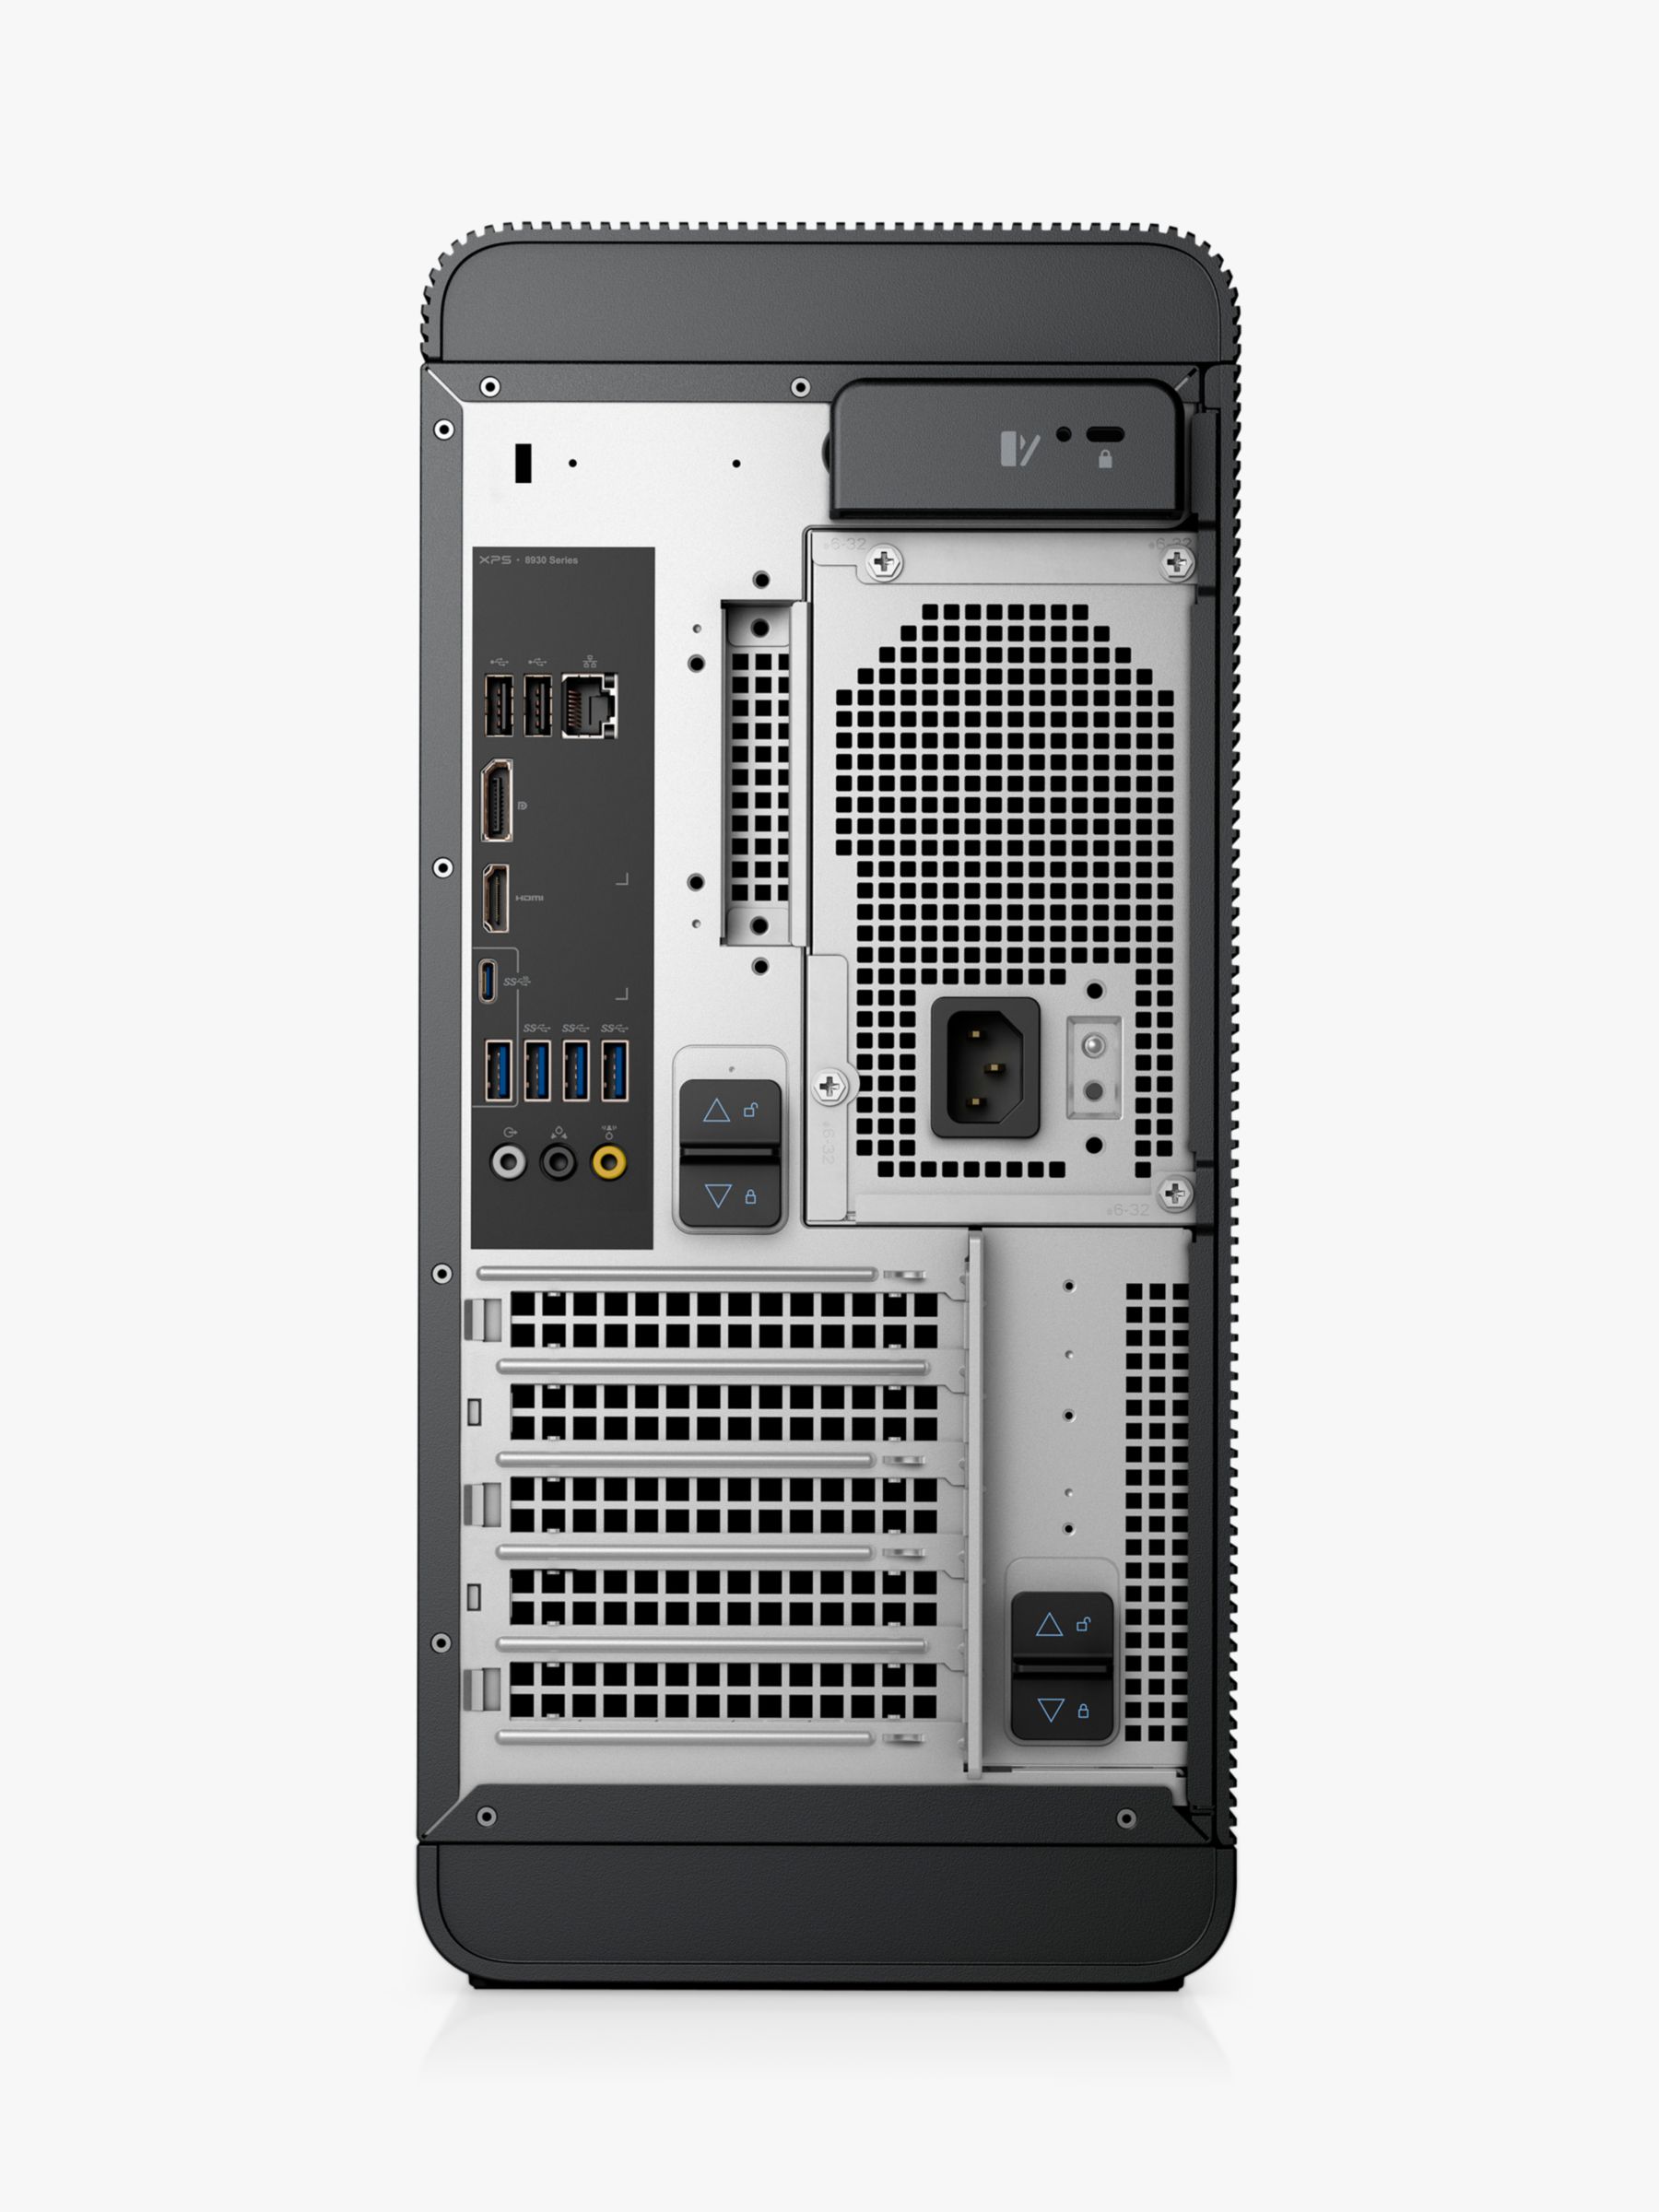 Dell Xps 8930 Desktop Pc Intel Core I5 Processor 8gb Ram 1tb